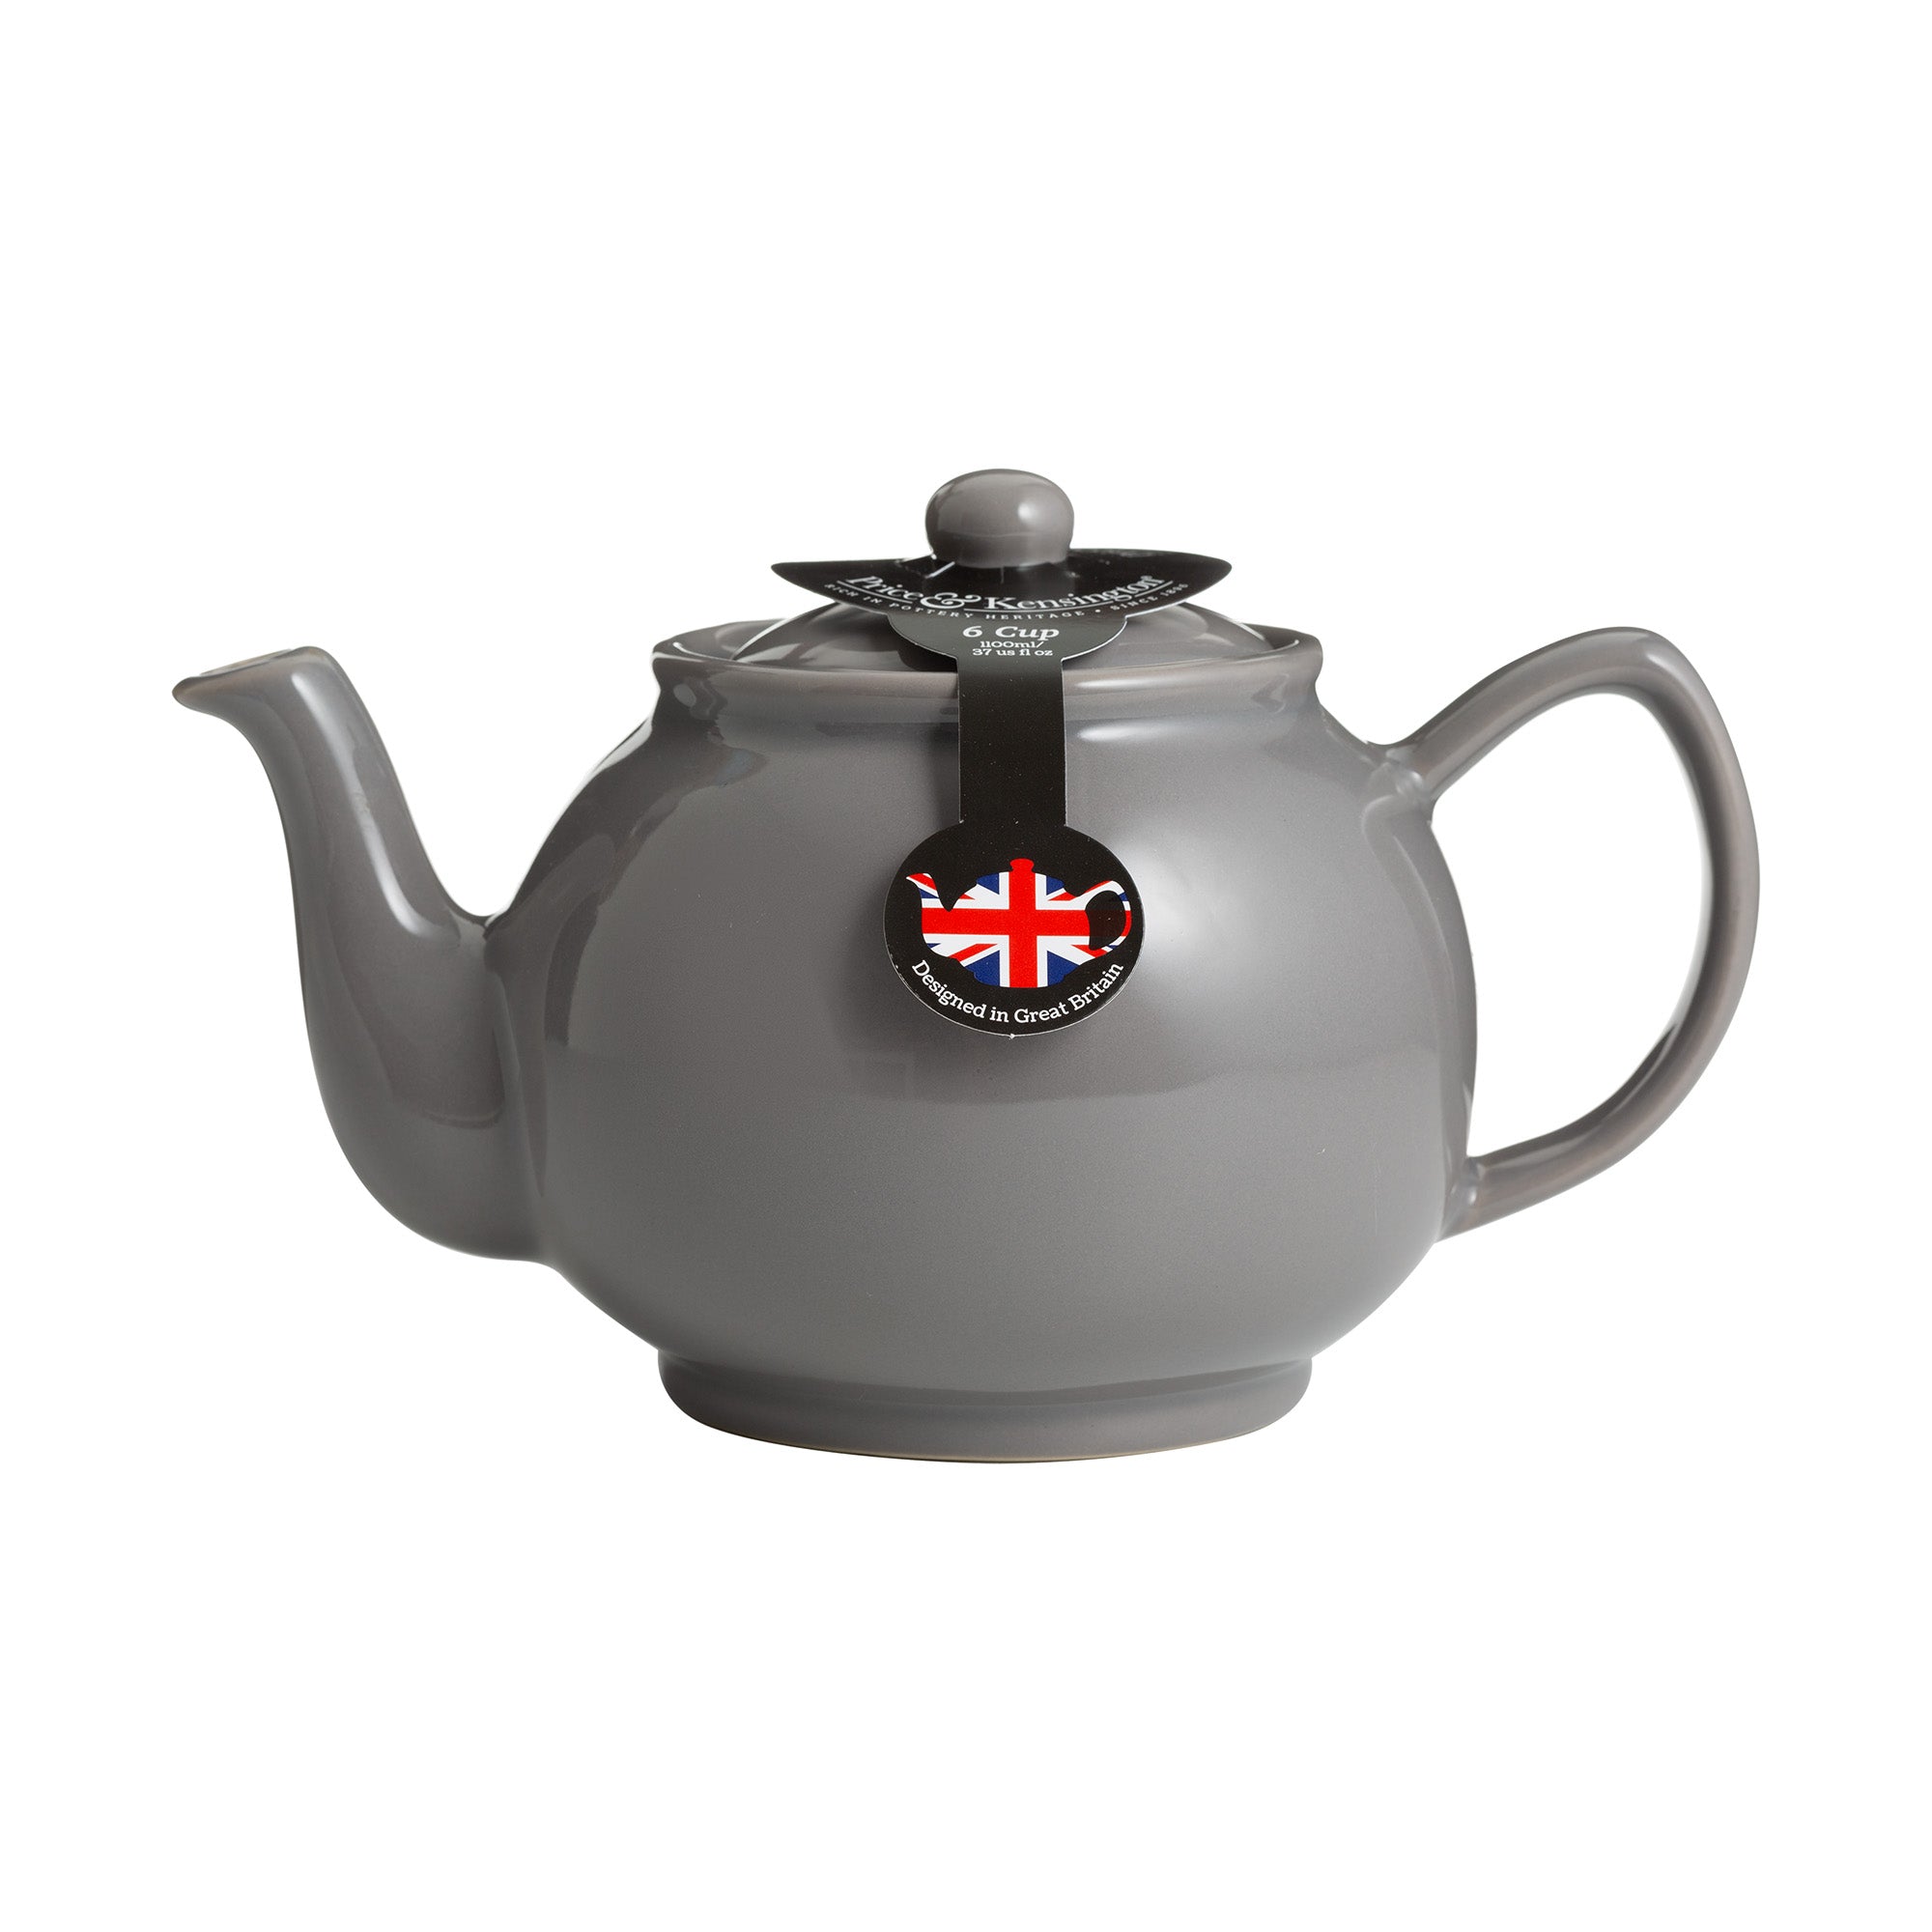 Price & Kensington 2 Cup Teapot